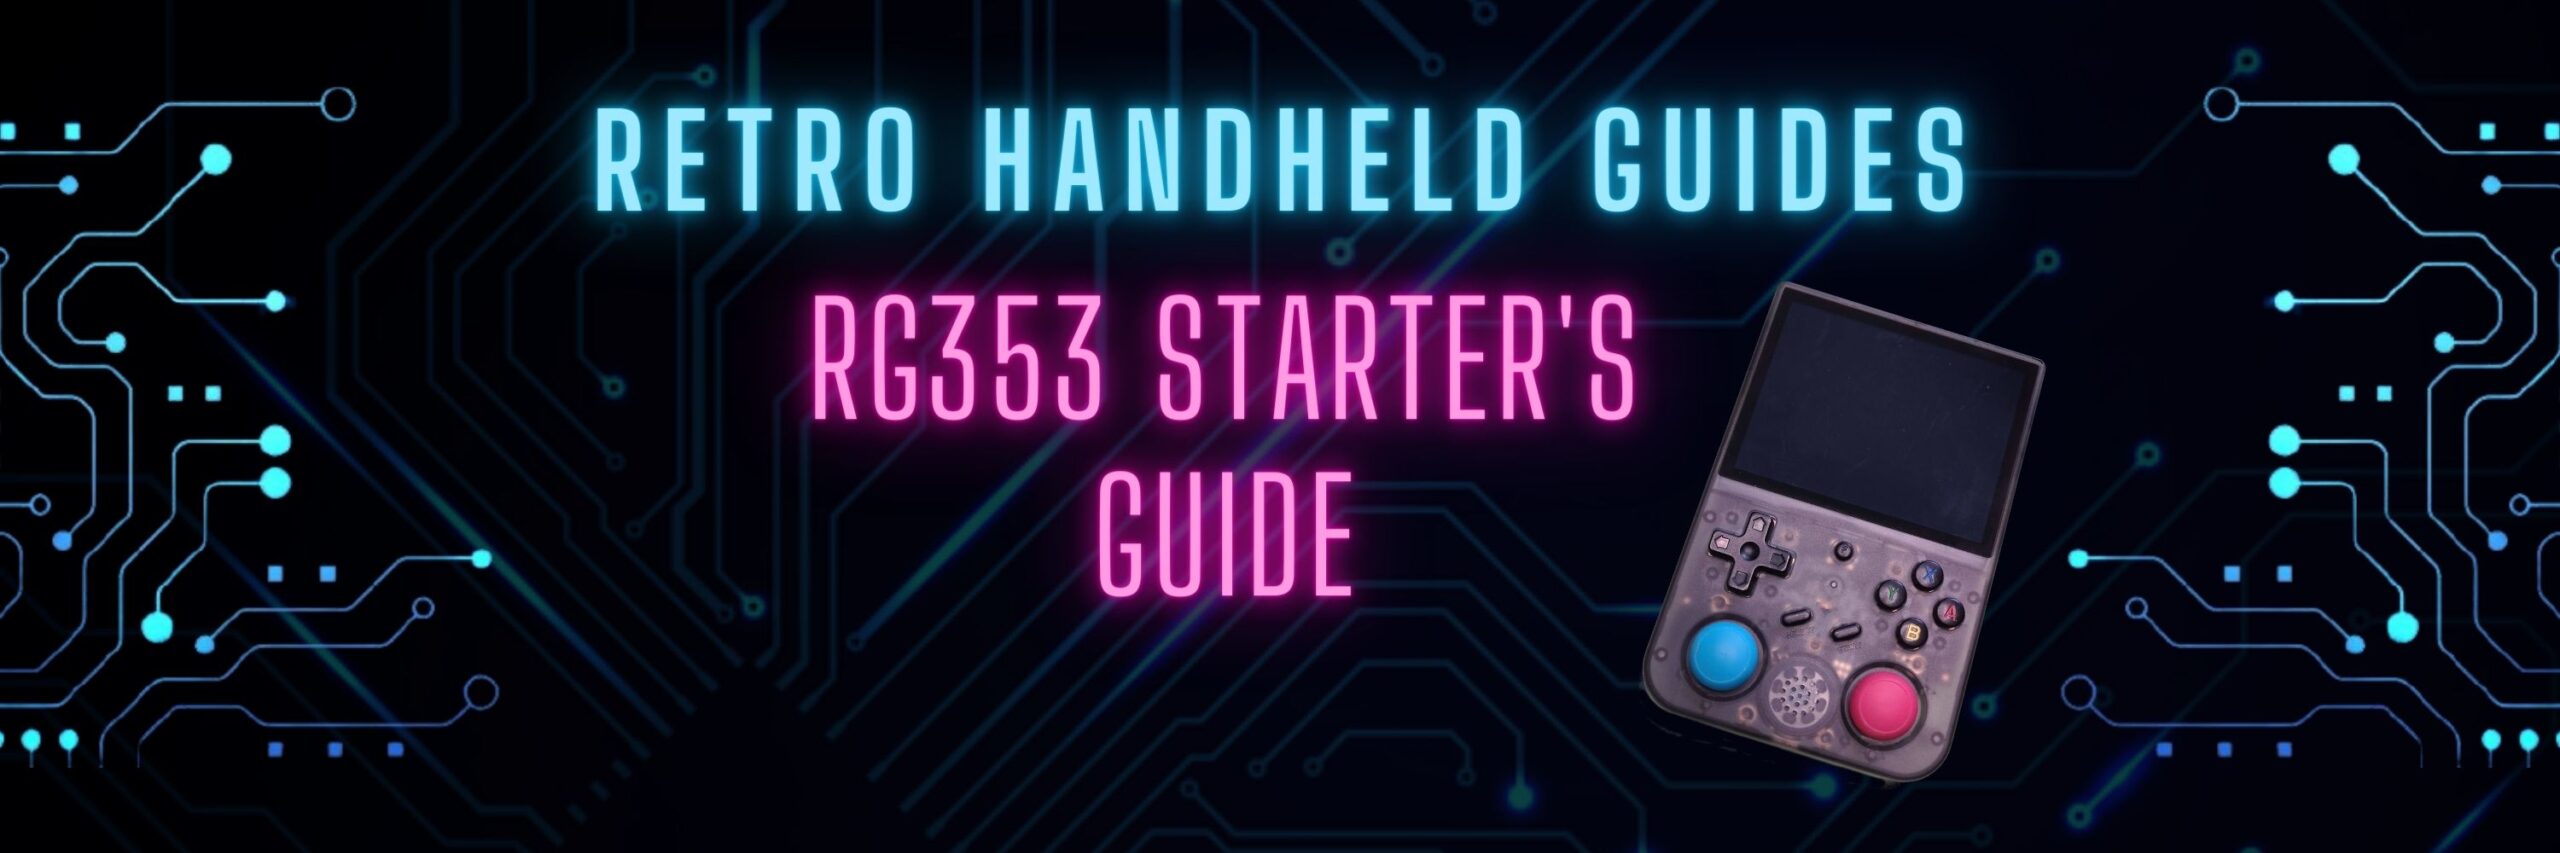 RG353 Beginner Guide